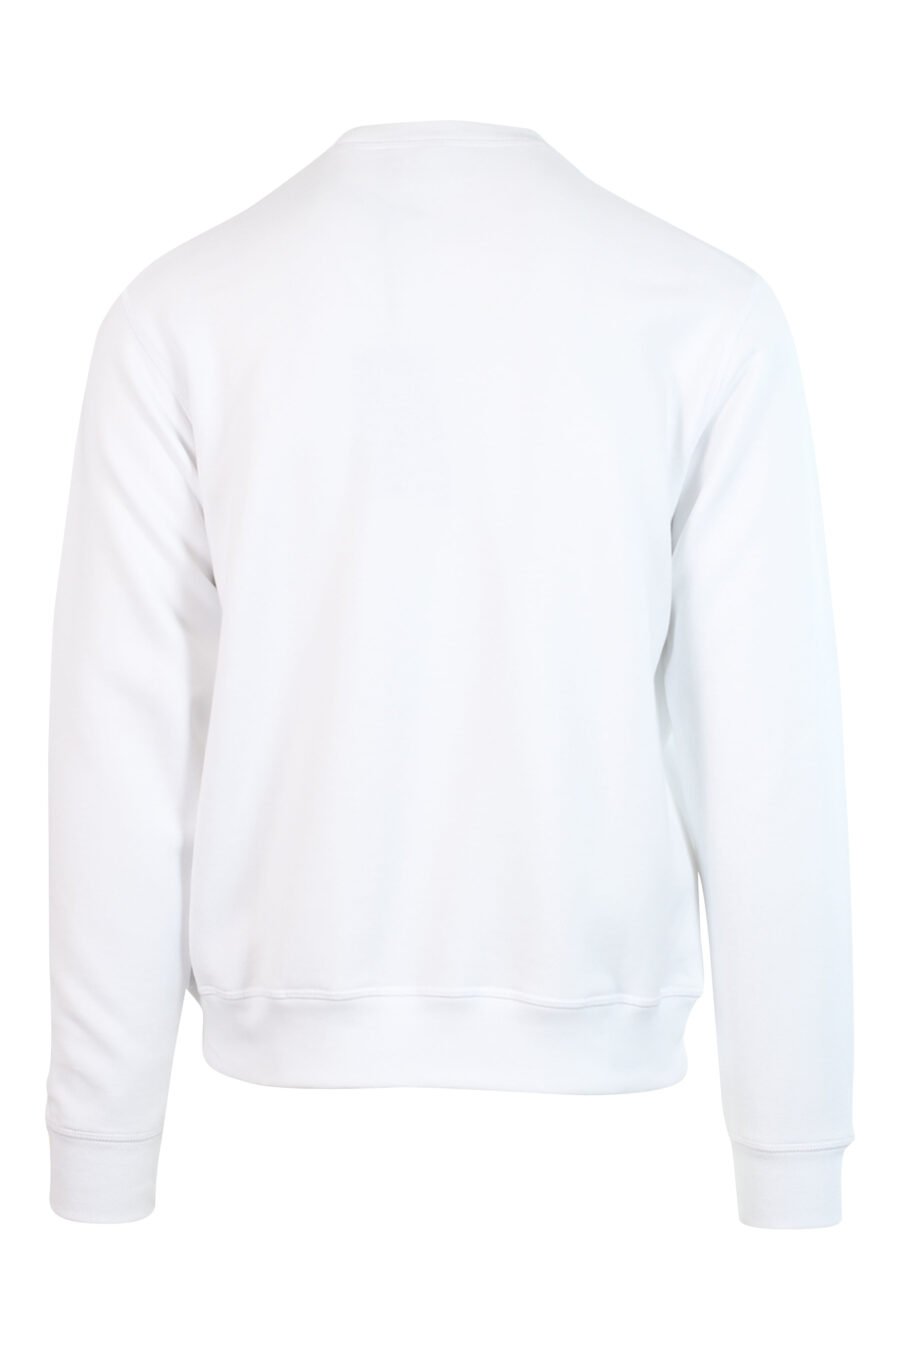 Weißes Sweatshirt mit schwarzem Mini-Logo "Icon" in der Mitte - 8052134565063 2